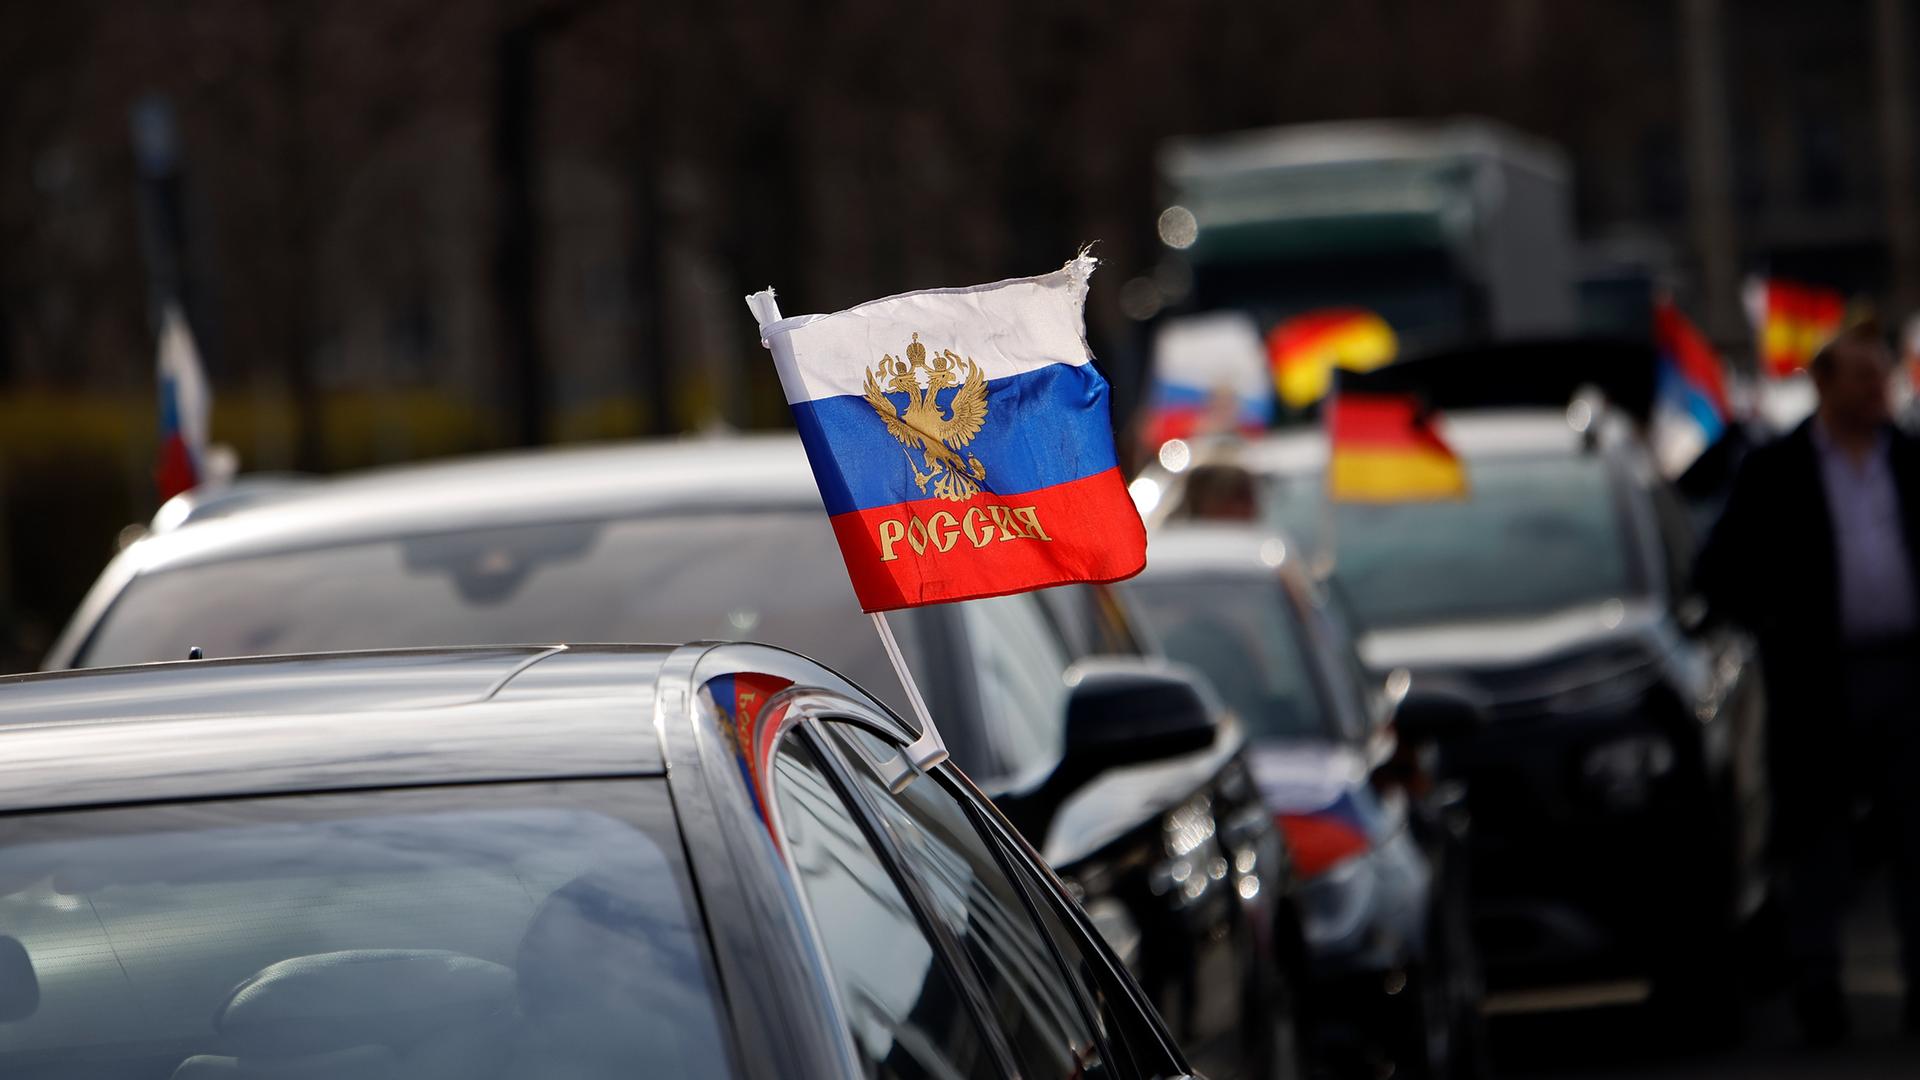 Beckum/NRW: Russische Flagge im Lkw - Ukrainer geht auf A2 auf Kollegen los